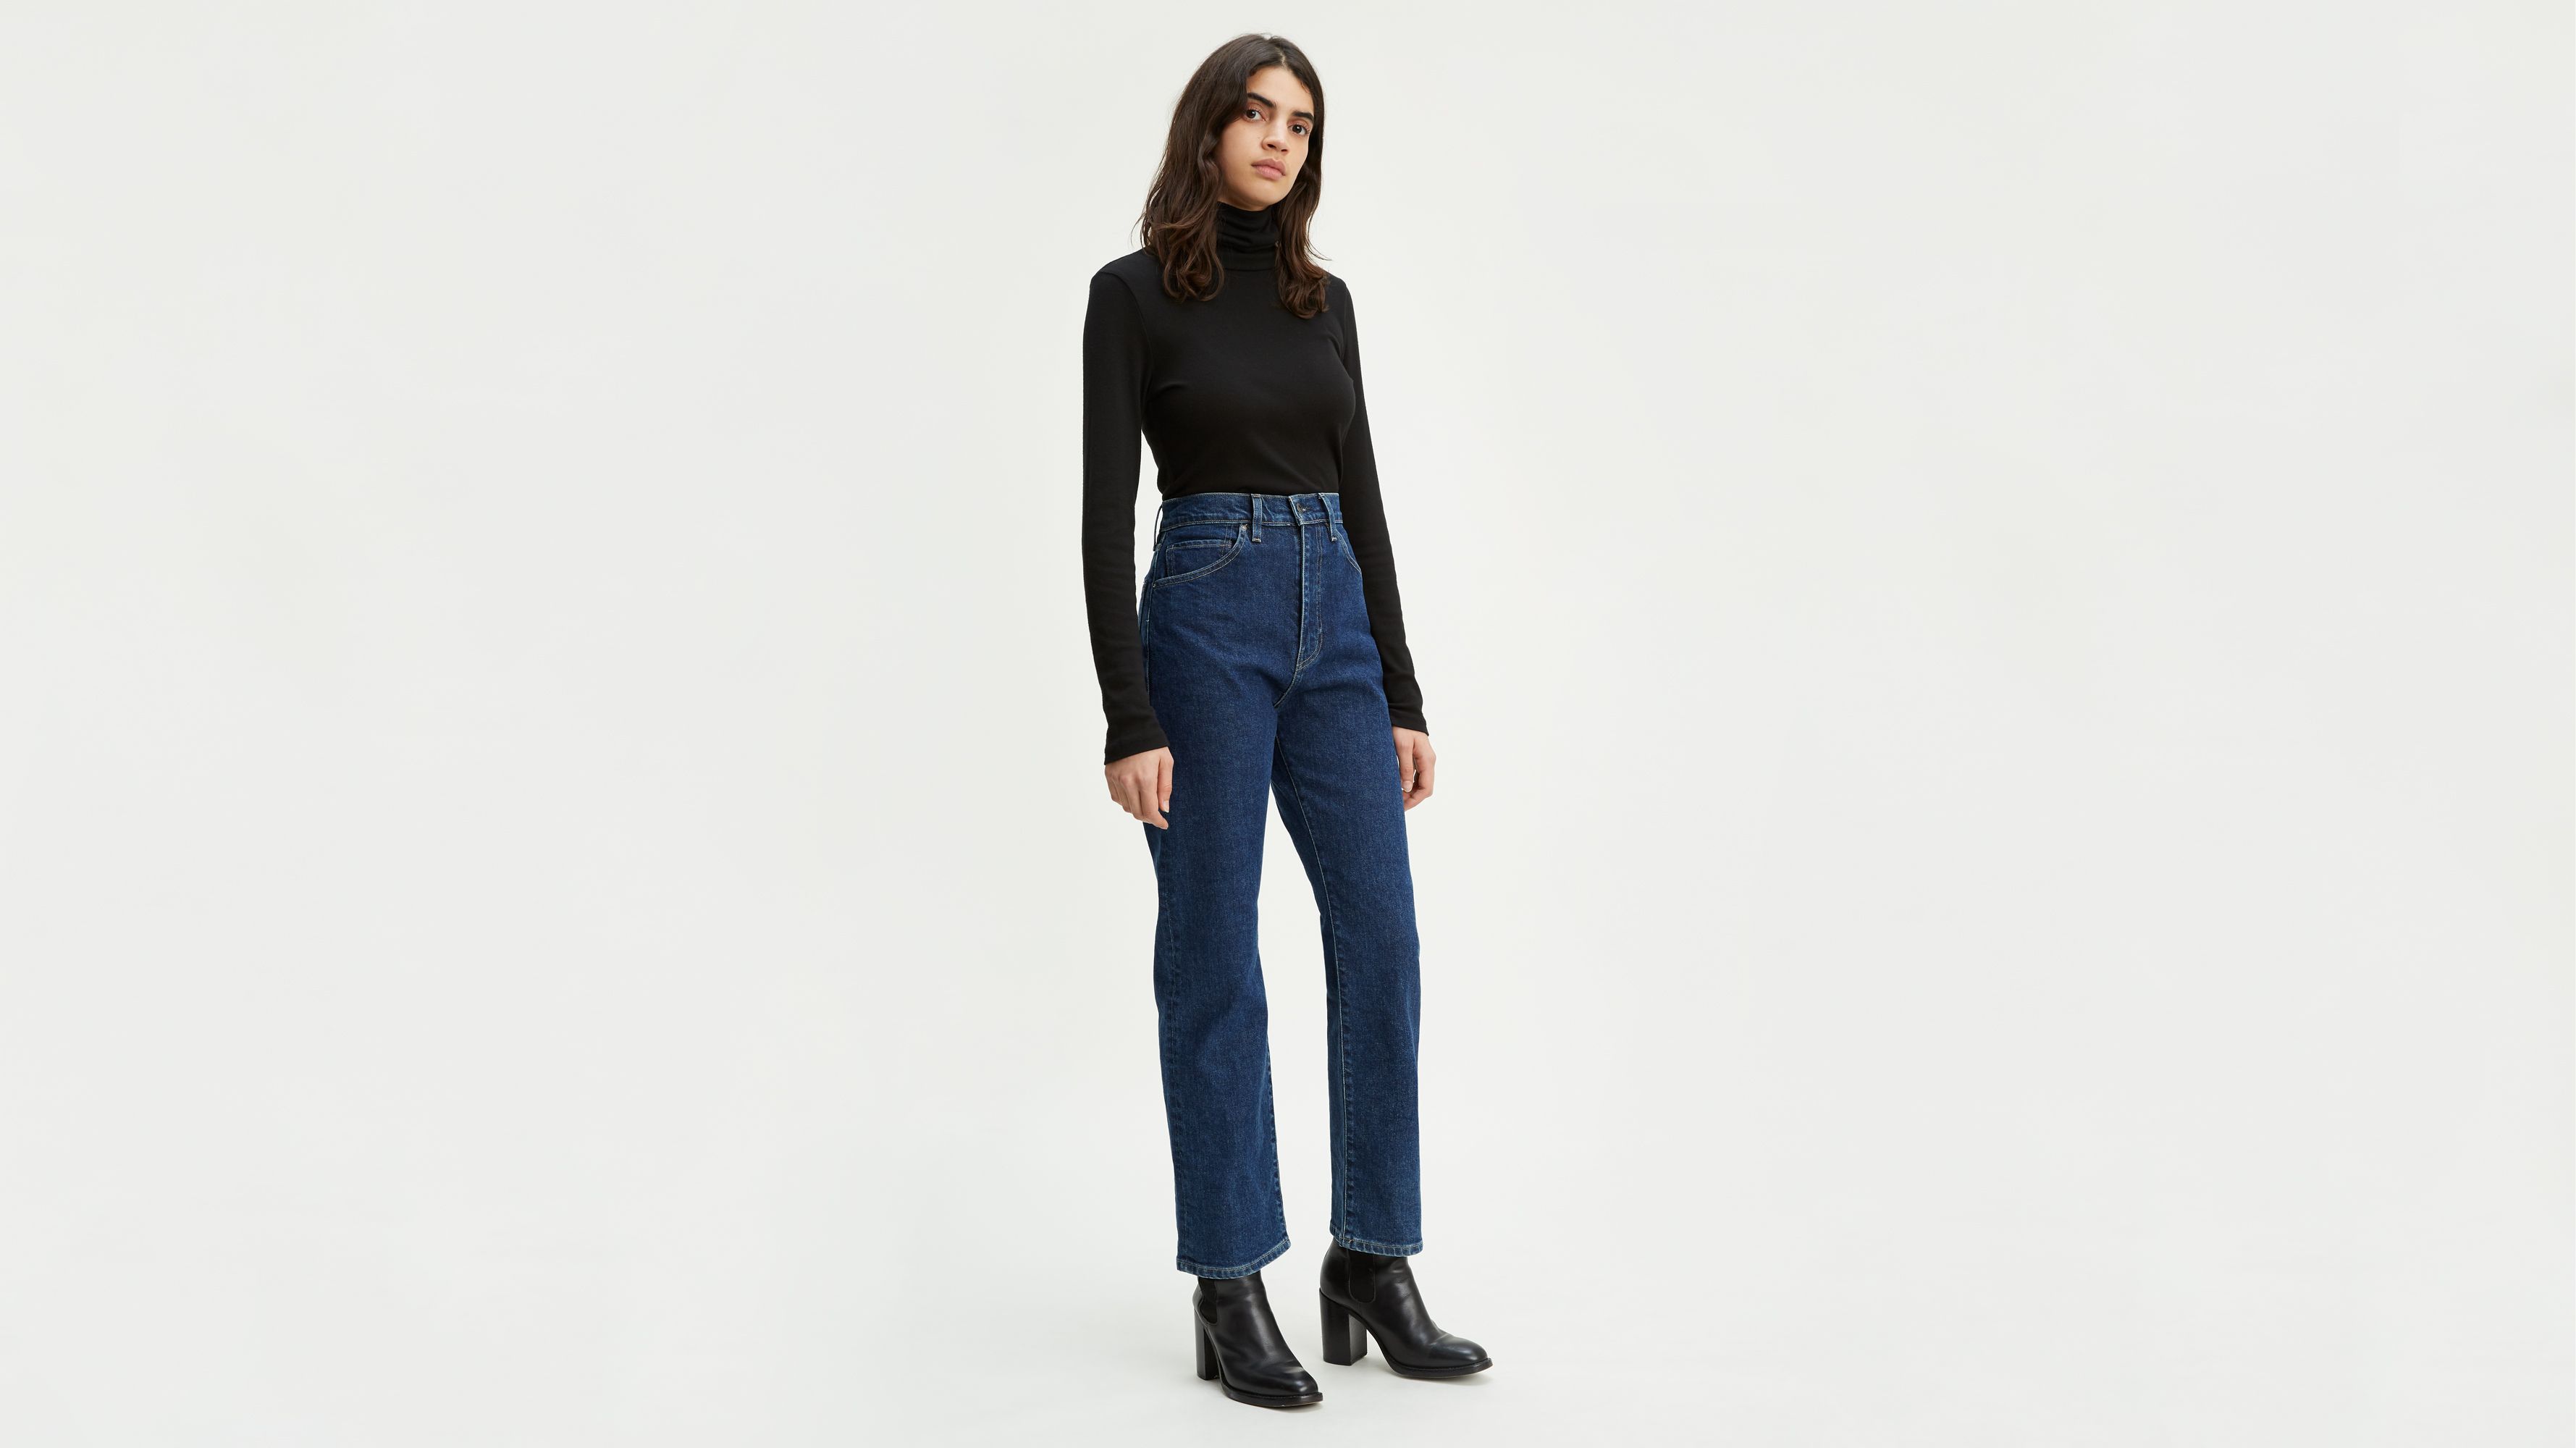 levis jeans 701